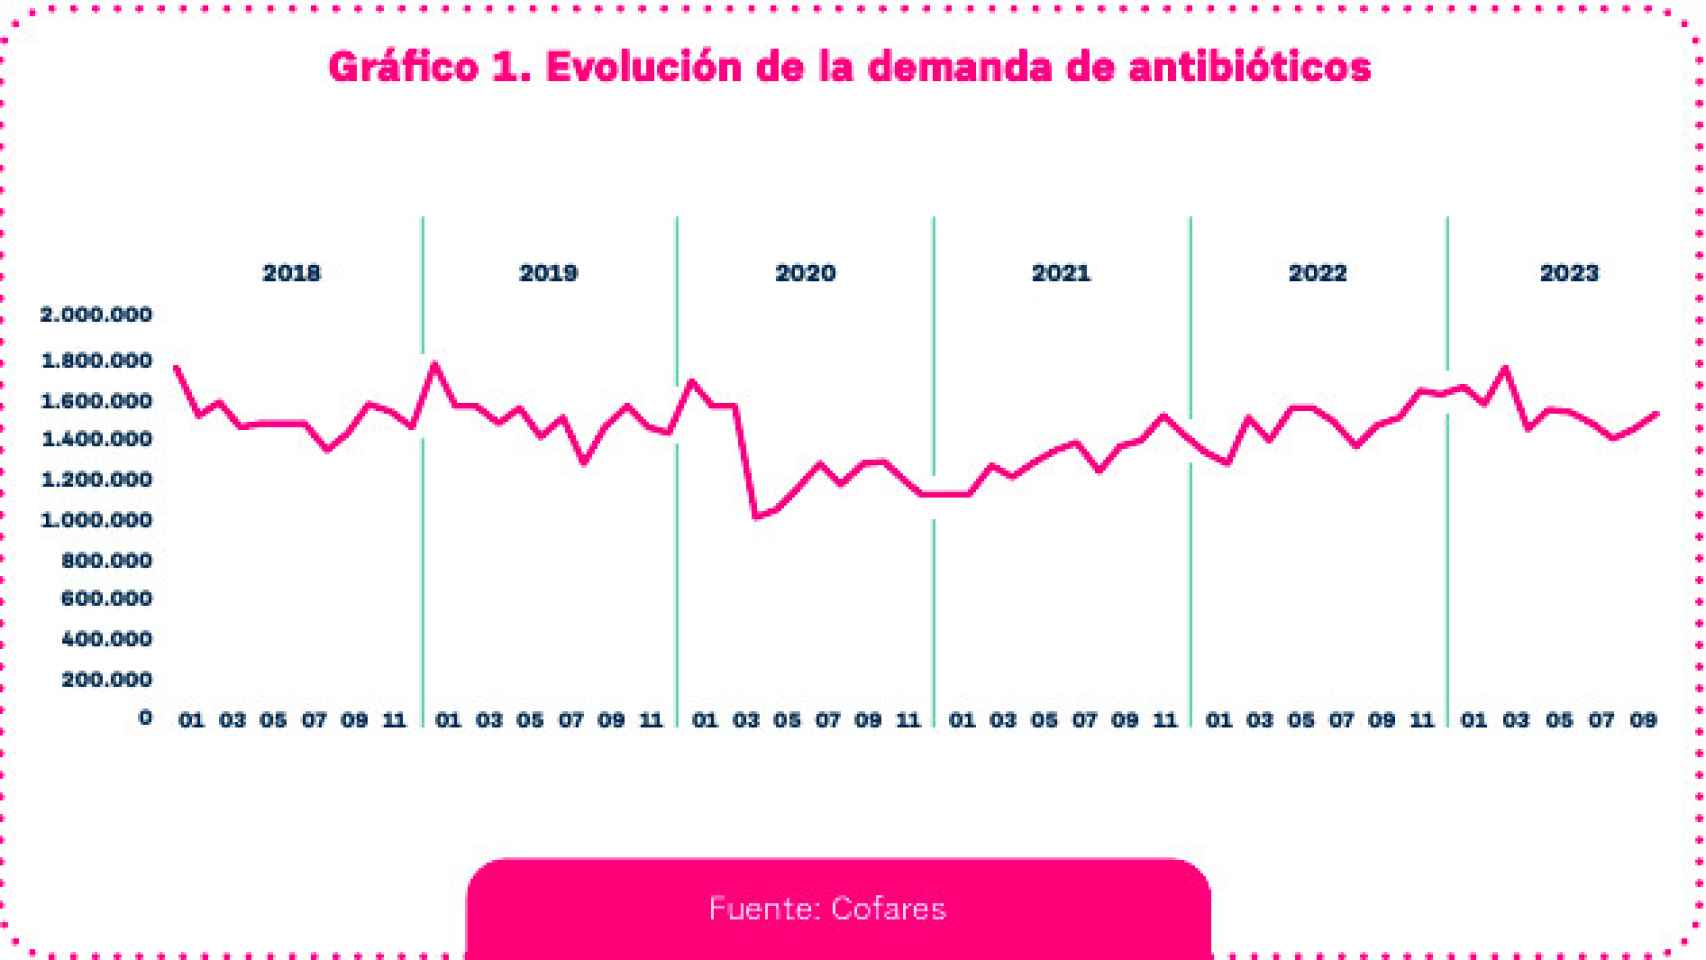 Evolución de la demanda de antibióticos en las farmacias.